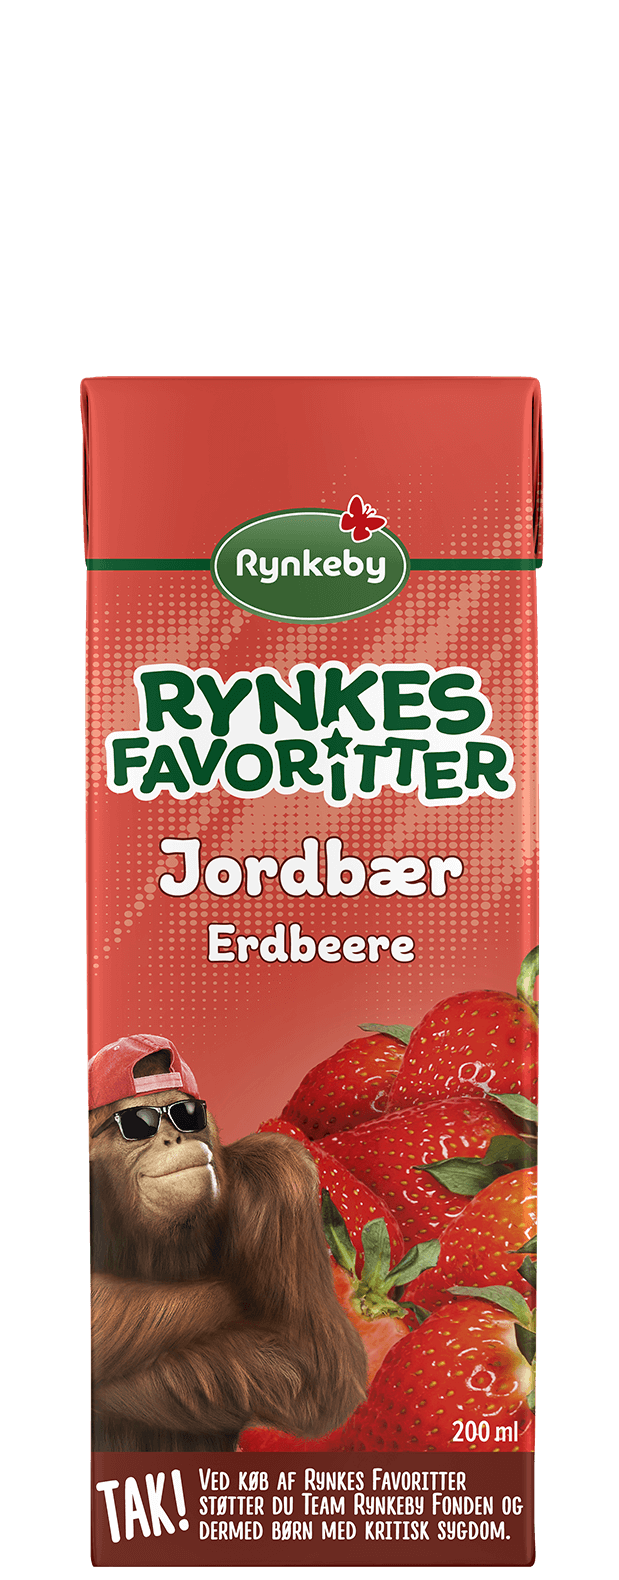 Rynkes Favoritter® Jordbær Frugtdrik